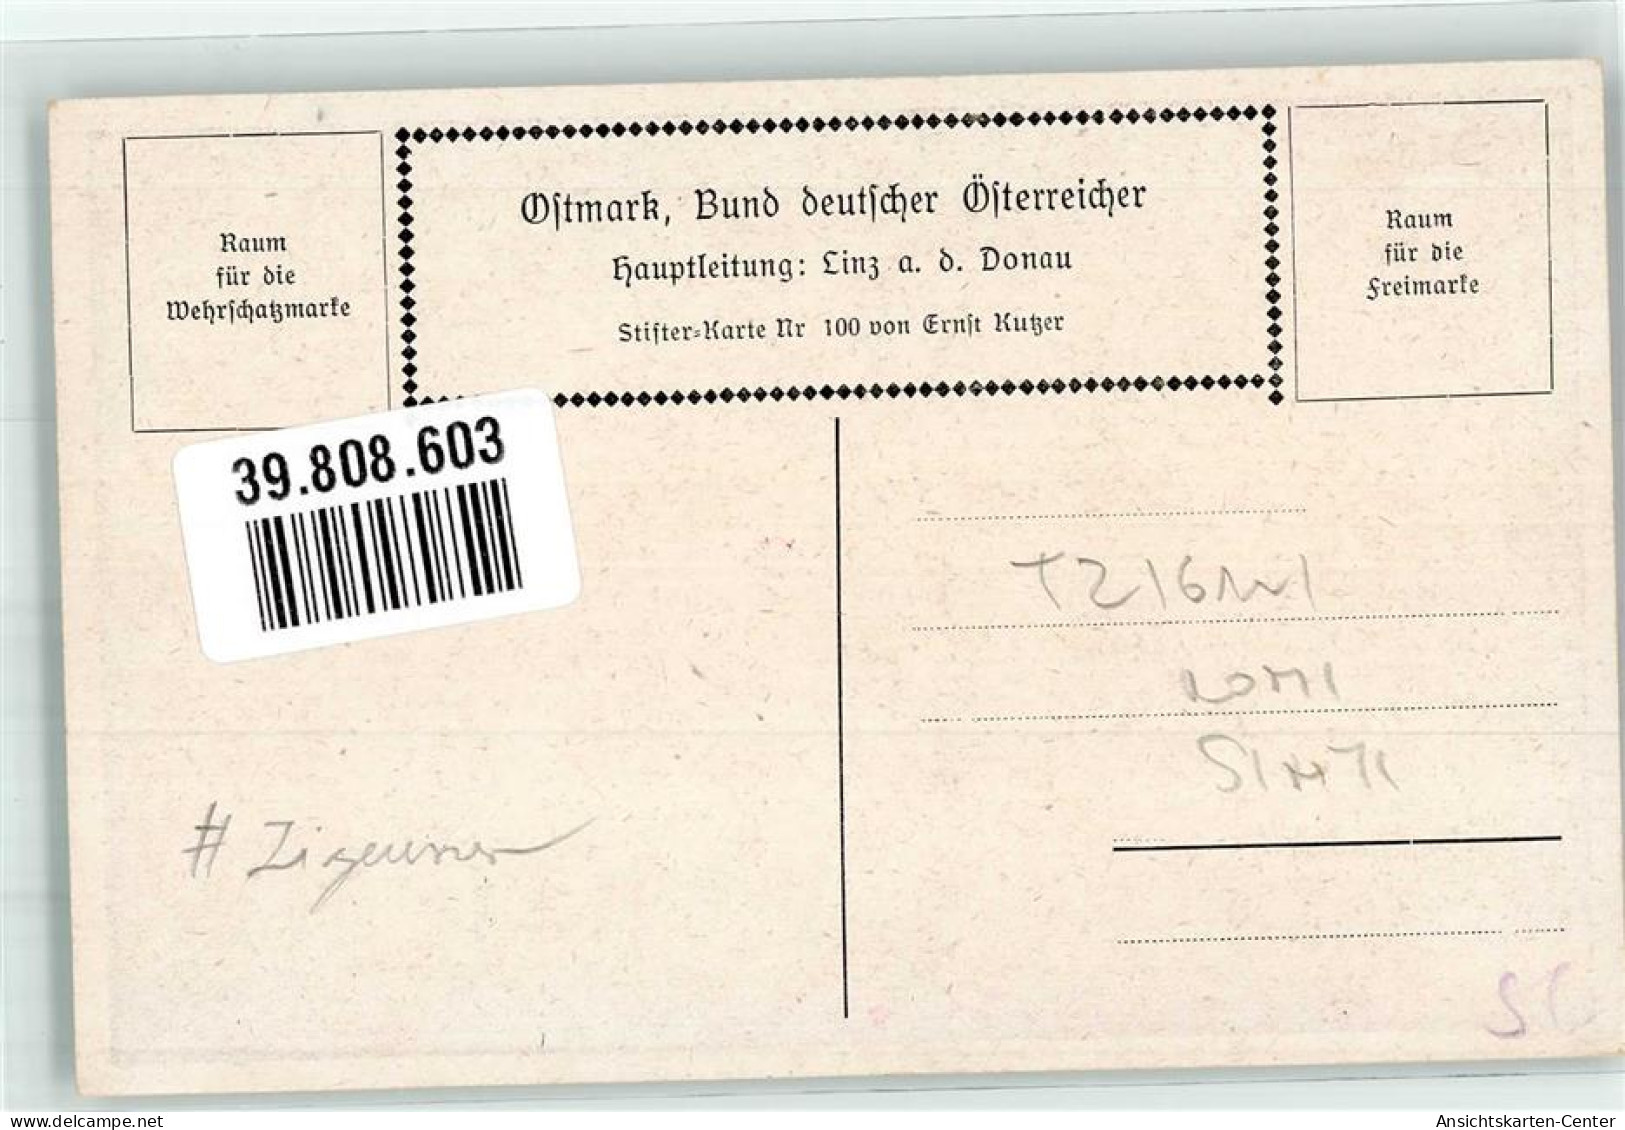 39808603 - Adalbert Stifter Der Waldbrunnen Zigeuner Ostmark Bund Deutscher Oesterreicher Nr. 100 - Kutzer, Ernst